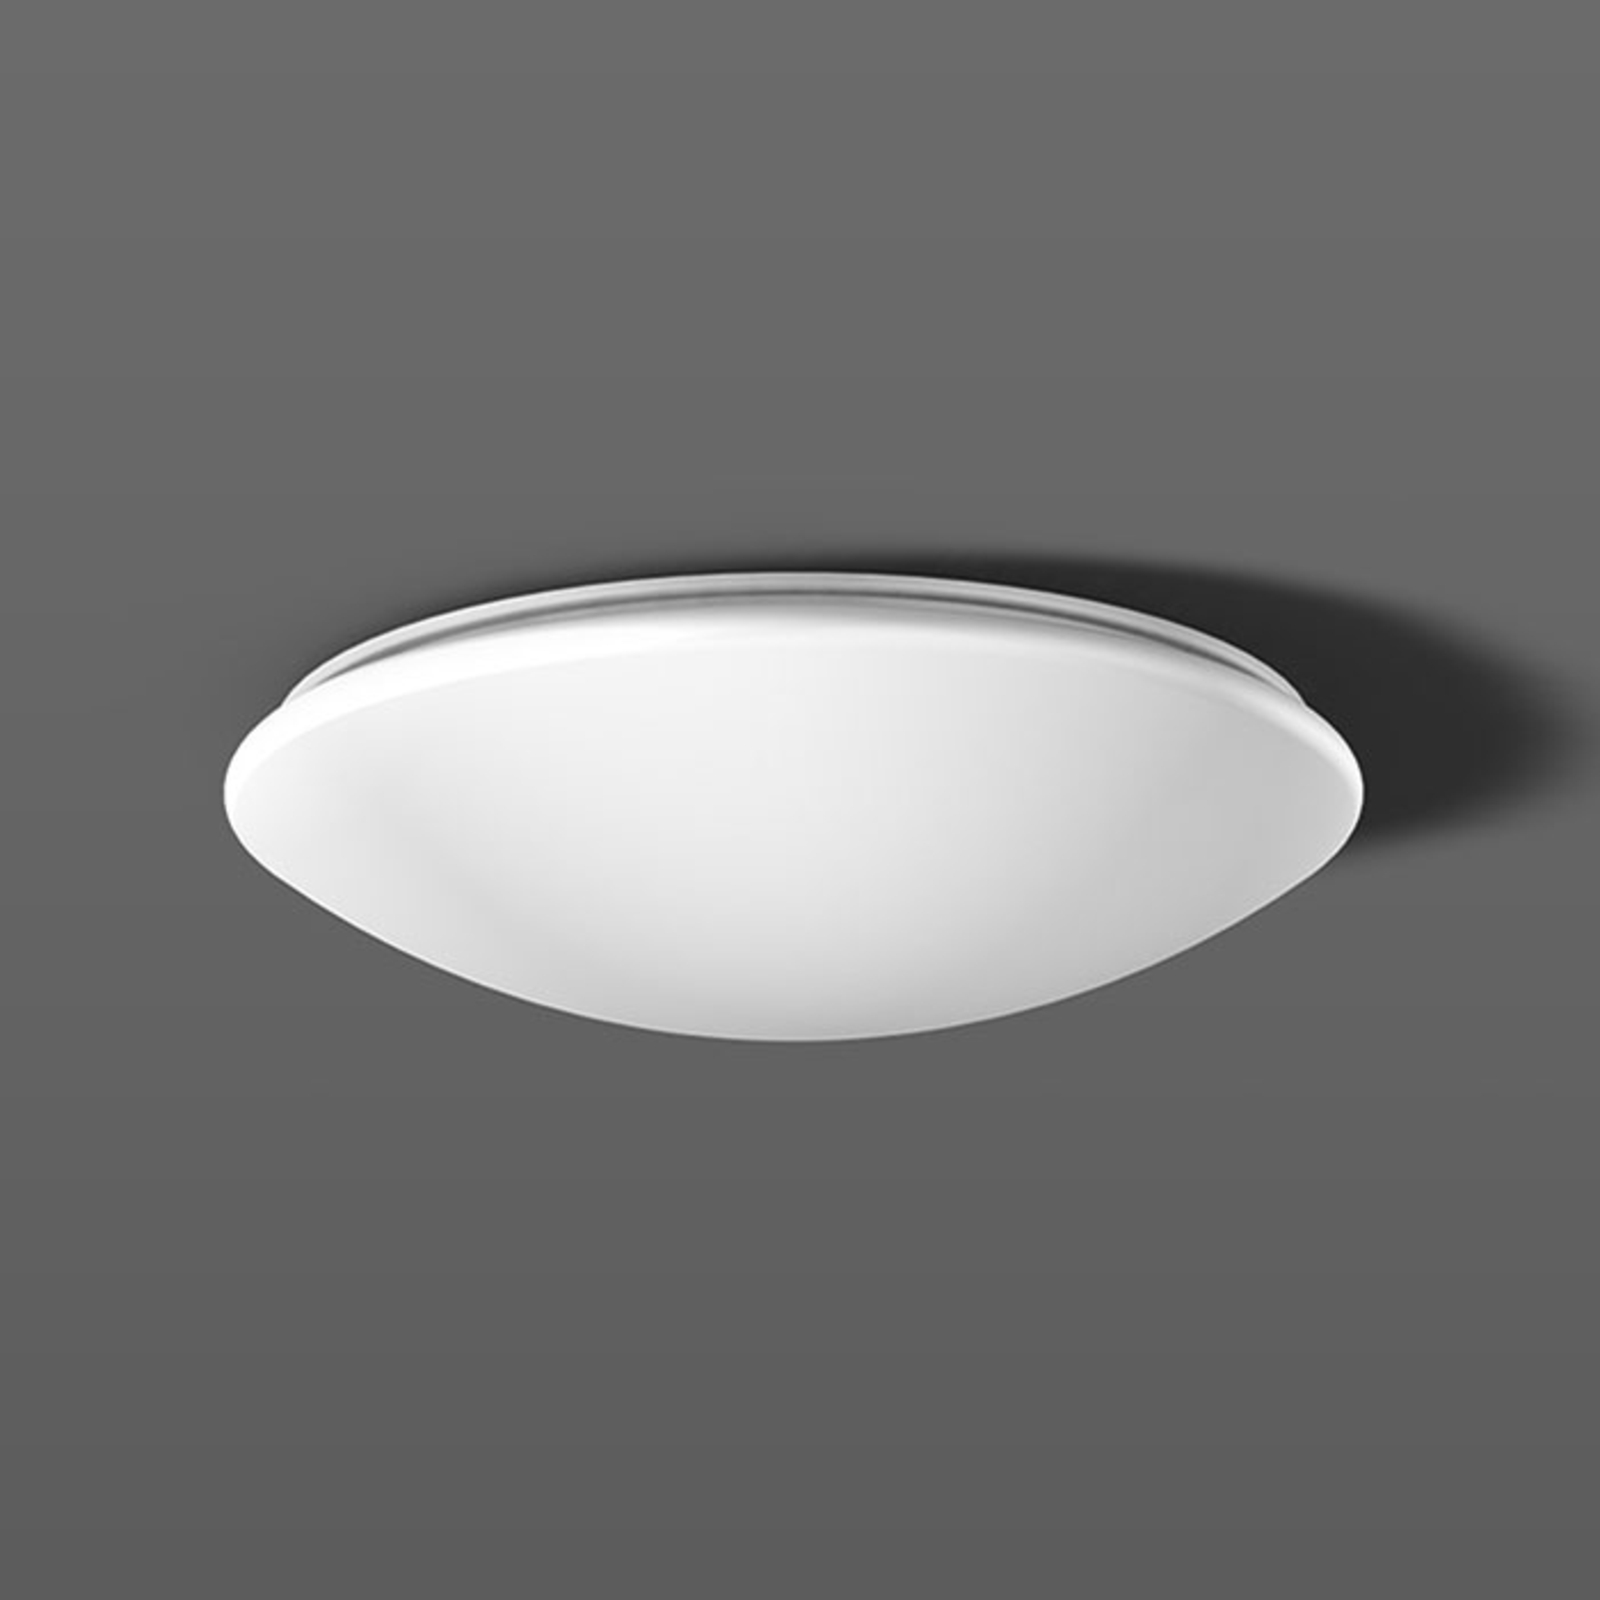 RZB Flat Polymero ceiling light DALI 21W 36cm 840